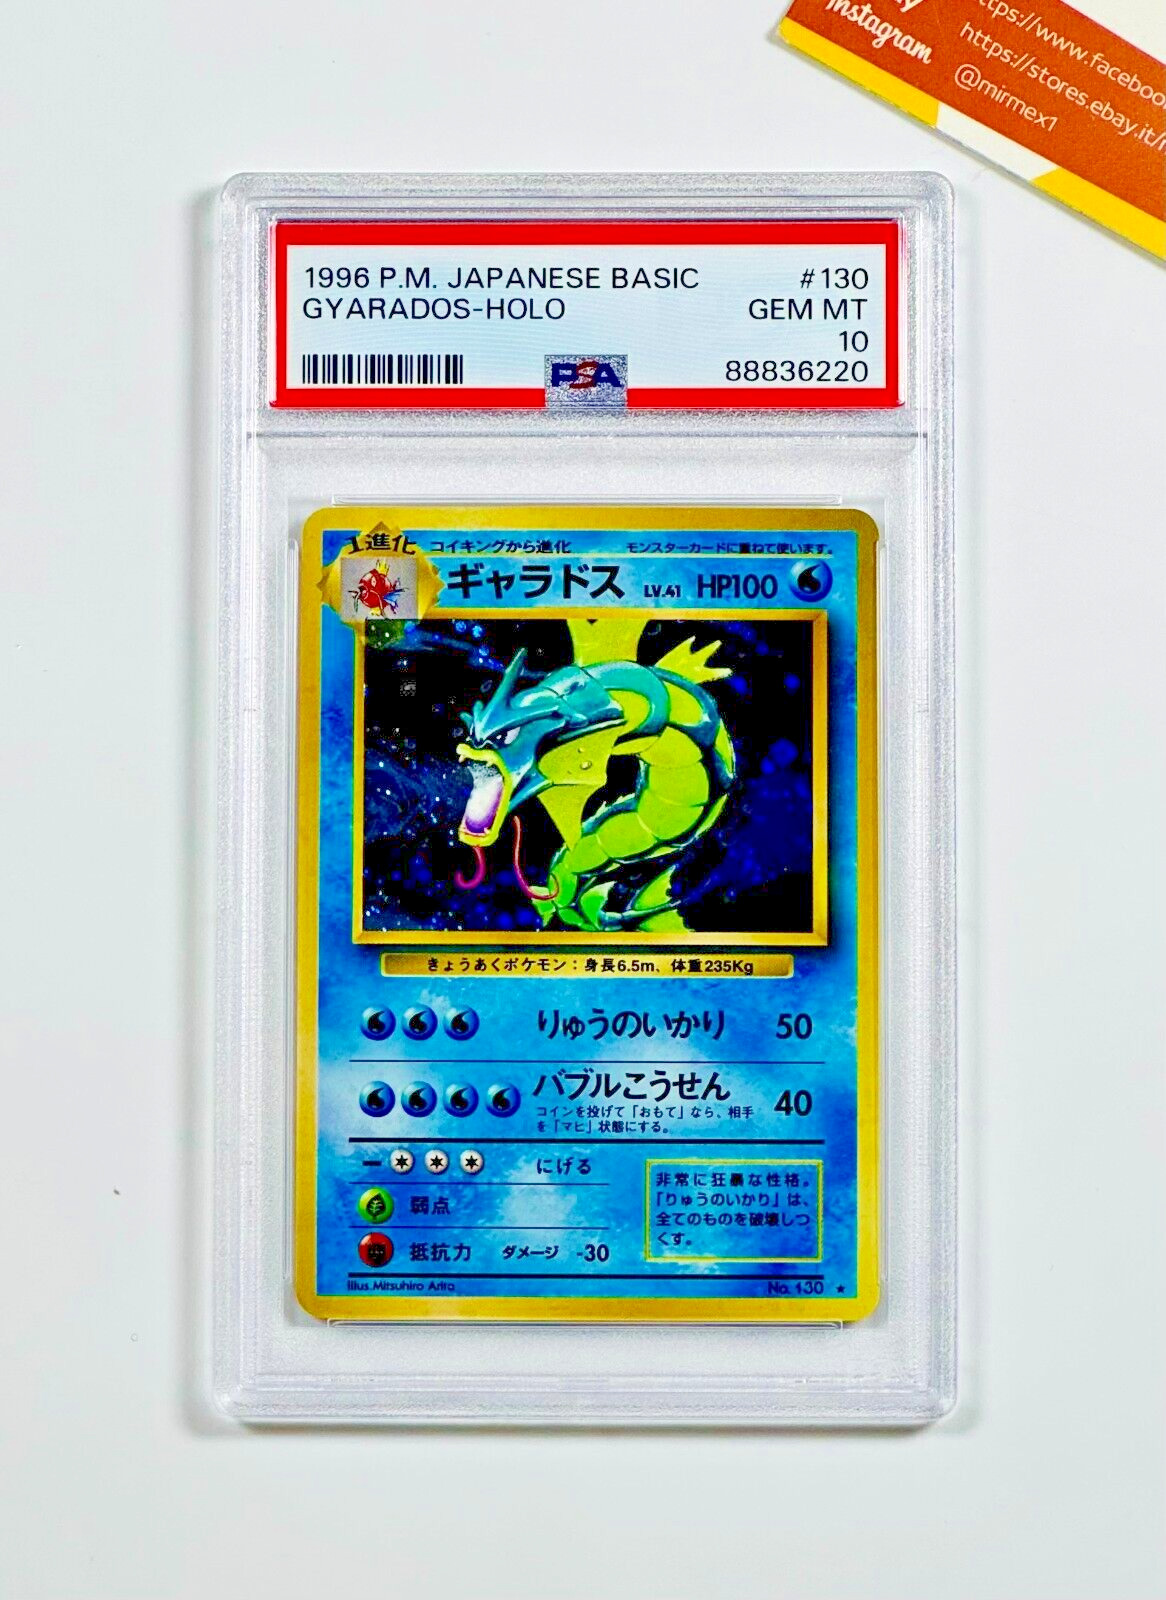 1996 Pokemon PSA 10 Gyarados #130 Holo Base Set Japanese